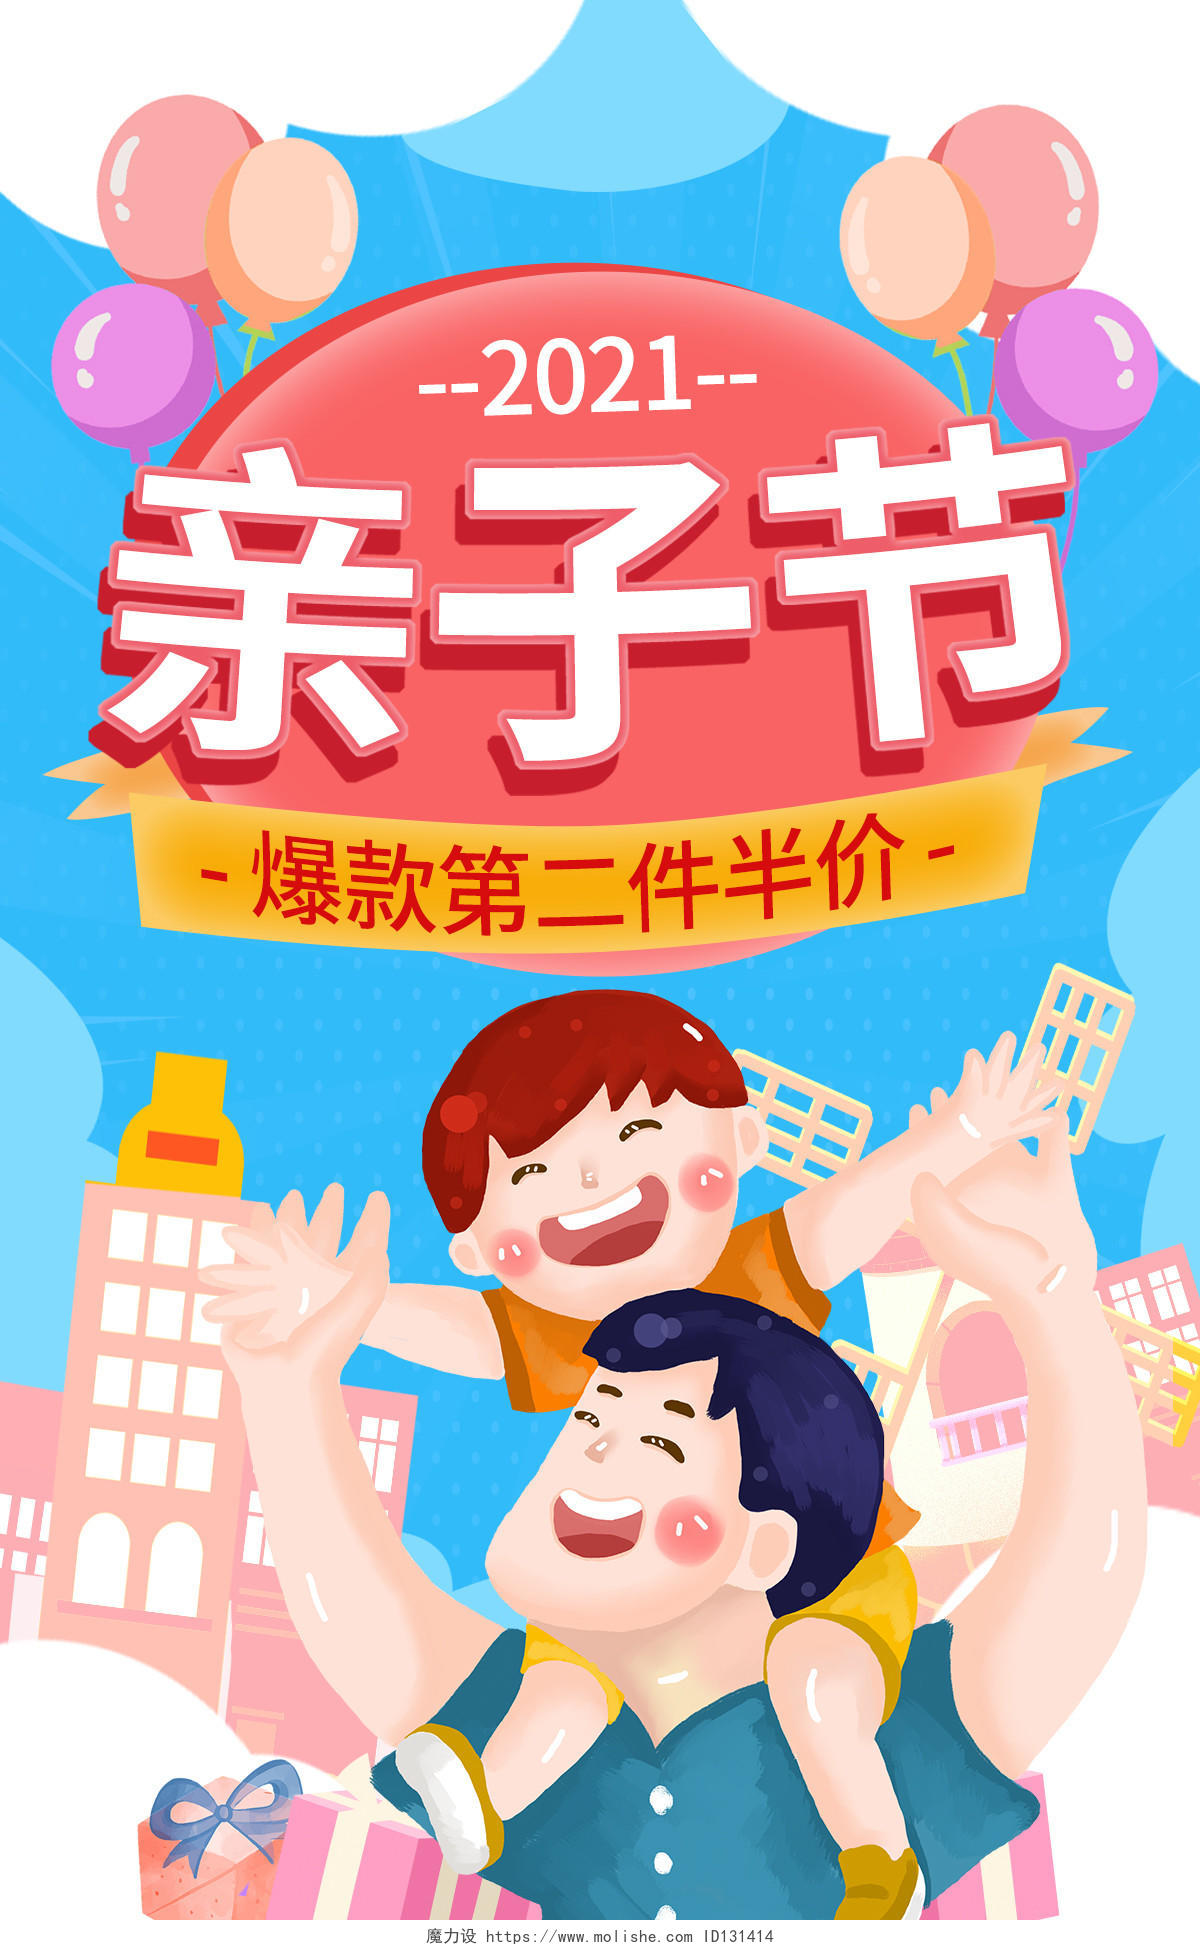 蓝色平面插画2021天猫母婴亲子节海报banner